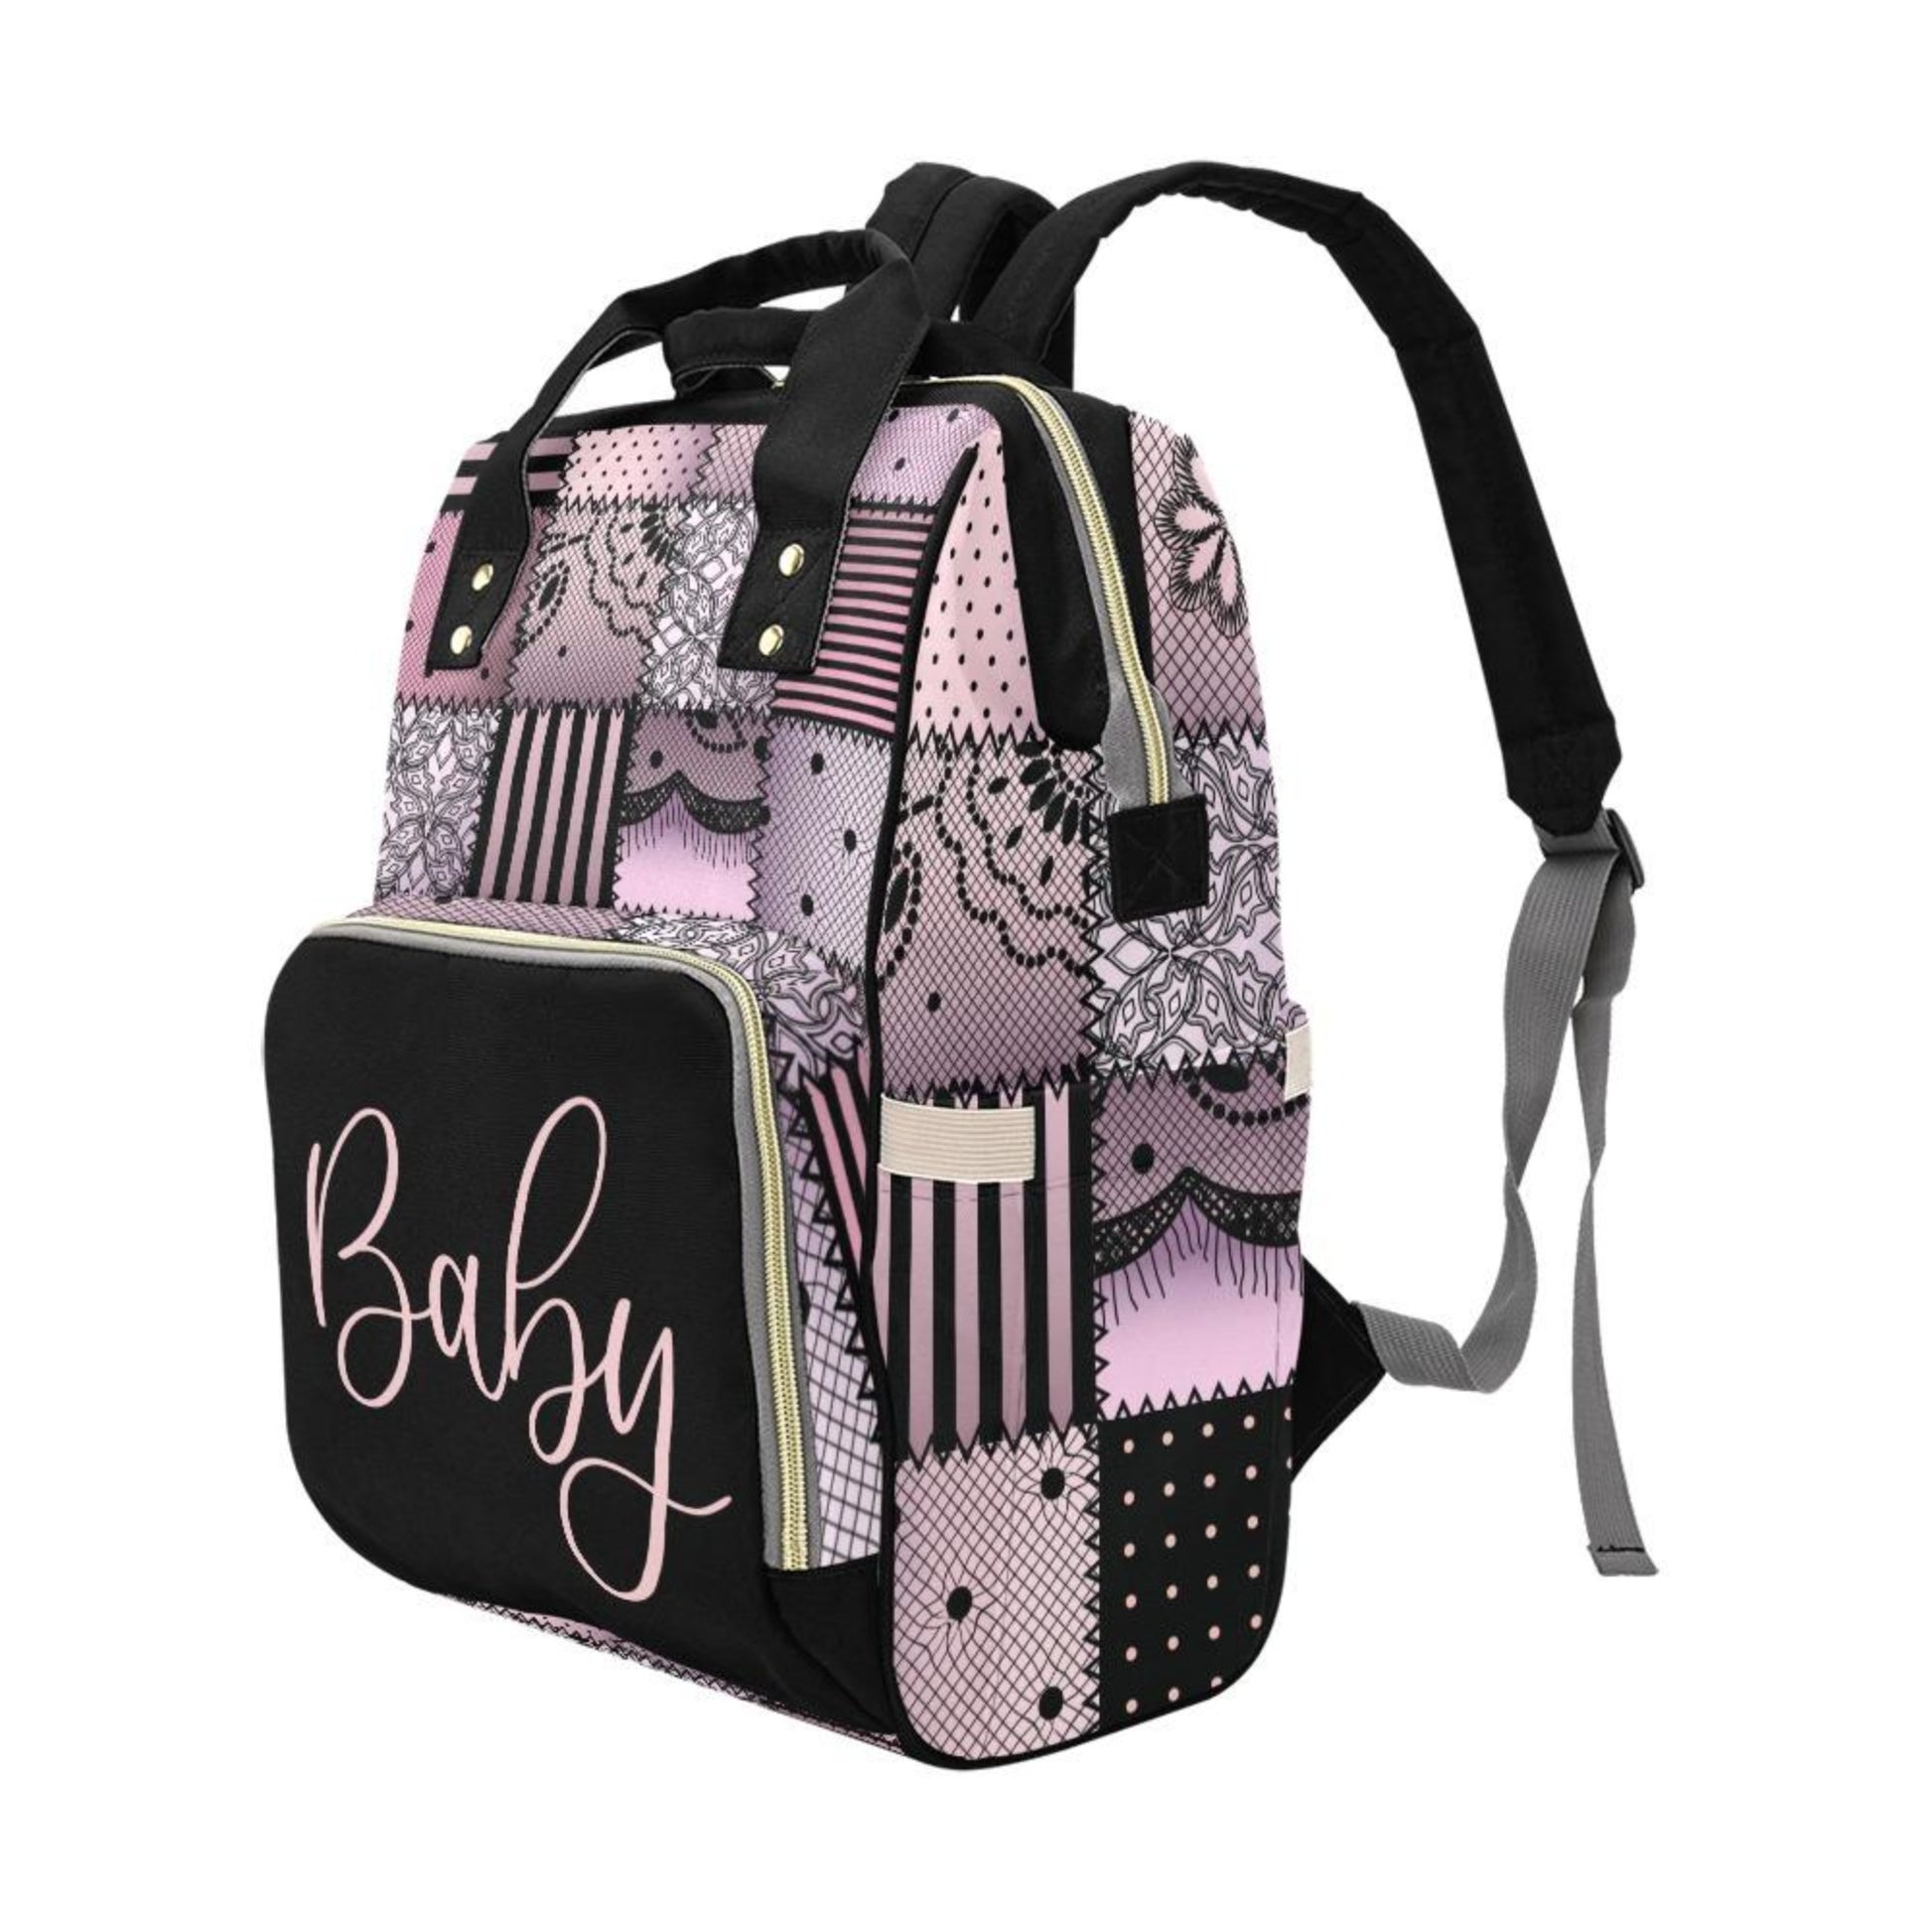 Designer Diaper Bag - Soft Pink and Black Quiltwork Diaper Bag Backpac